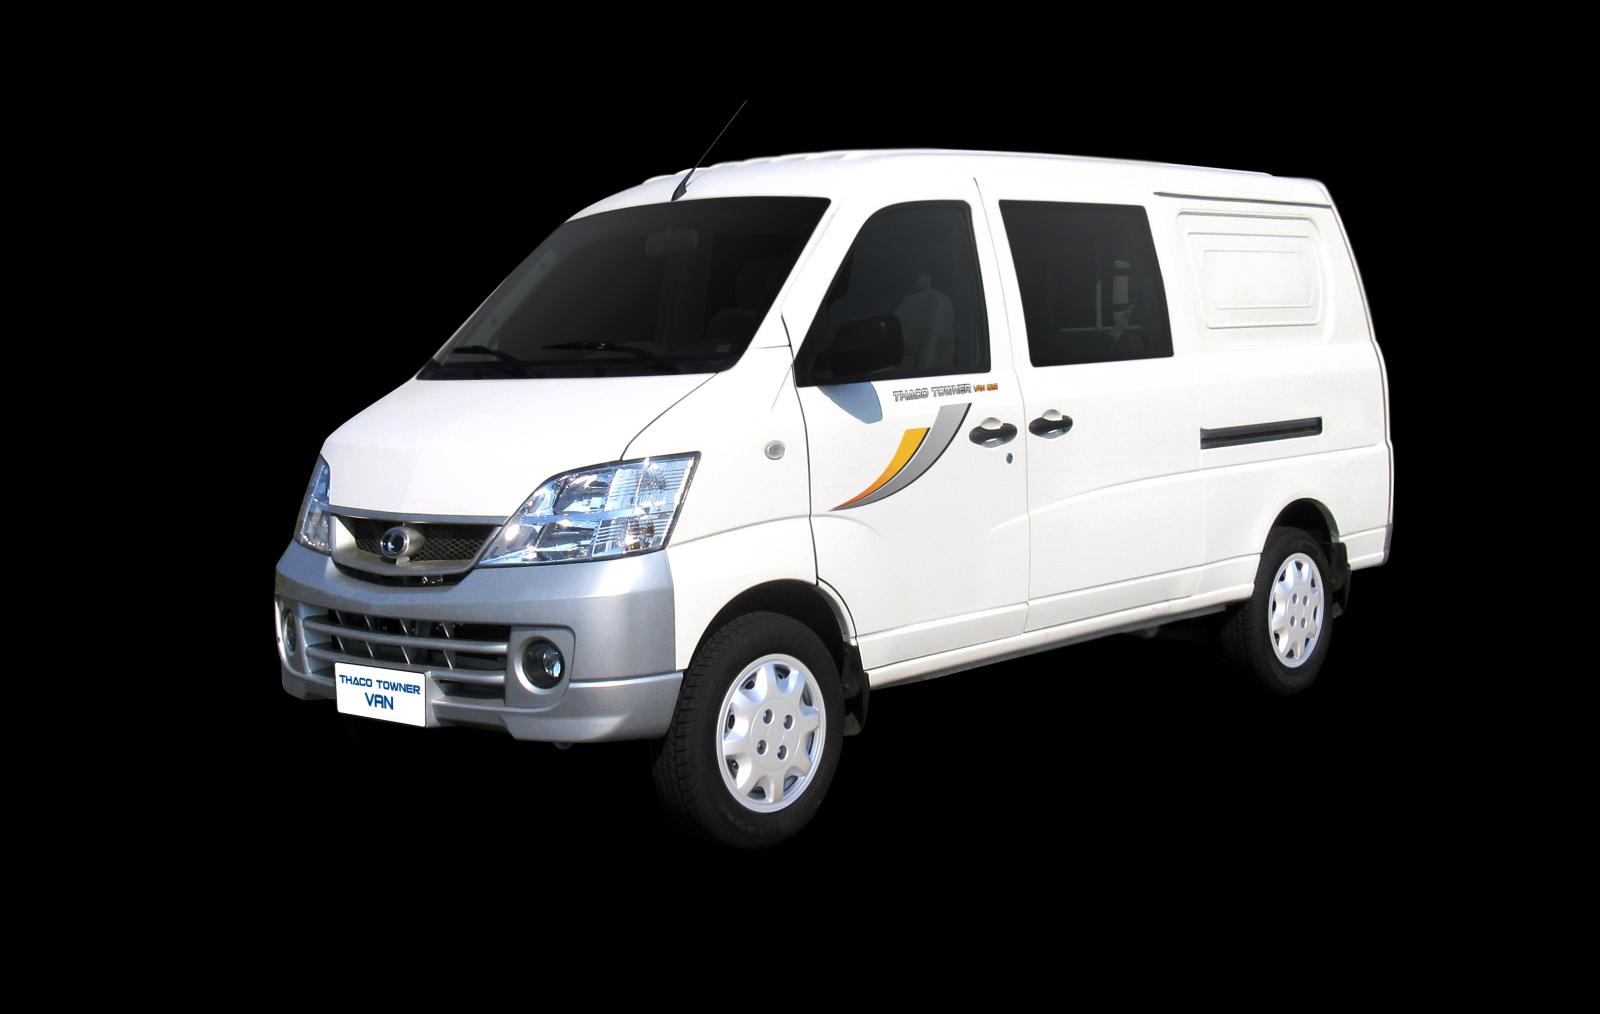 Hãng khác Xe du lịch 2020 - Xe tải Van 2 chỗ 5 chỗ Thaco